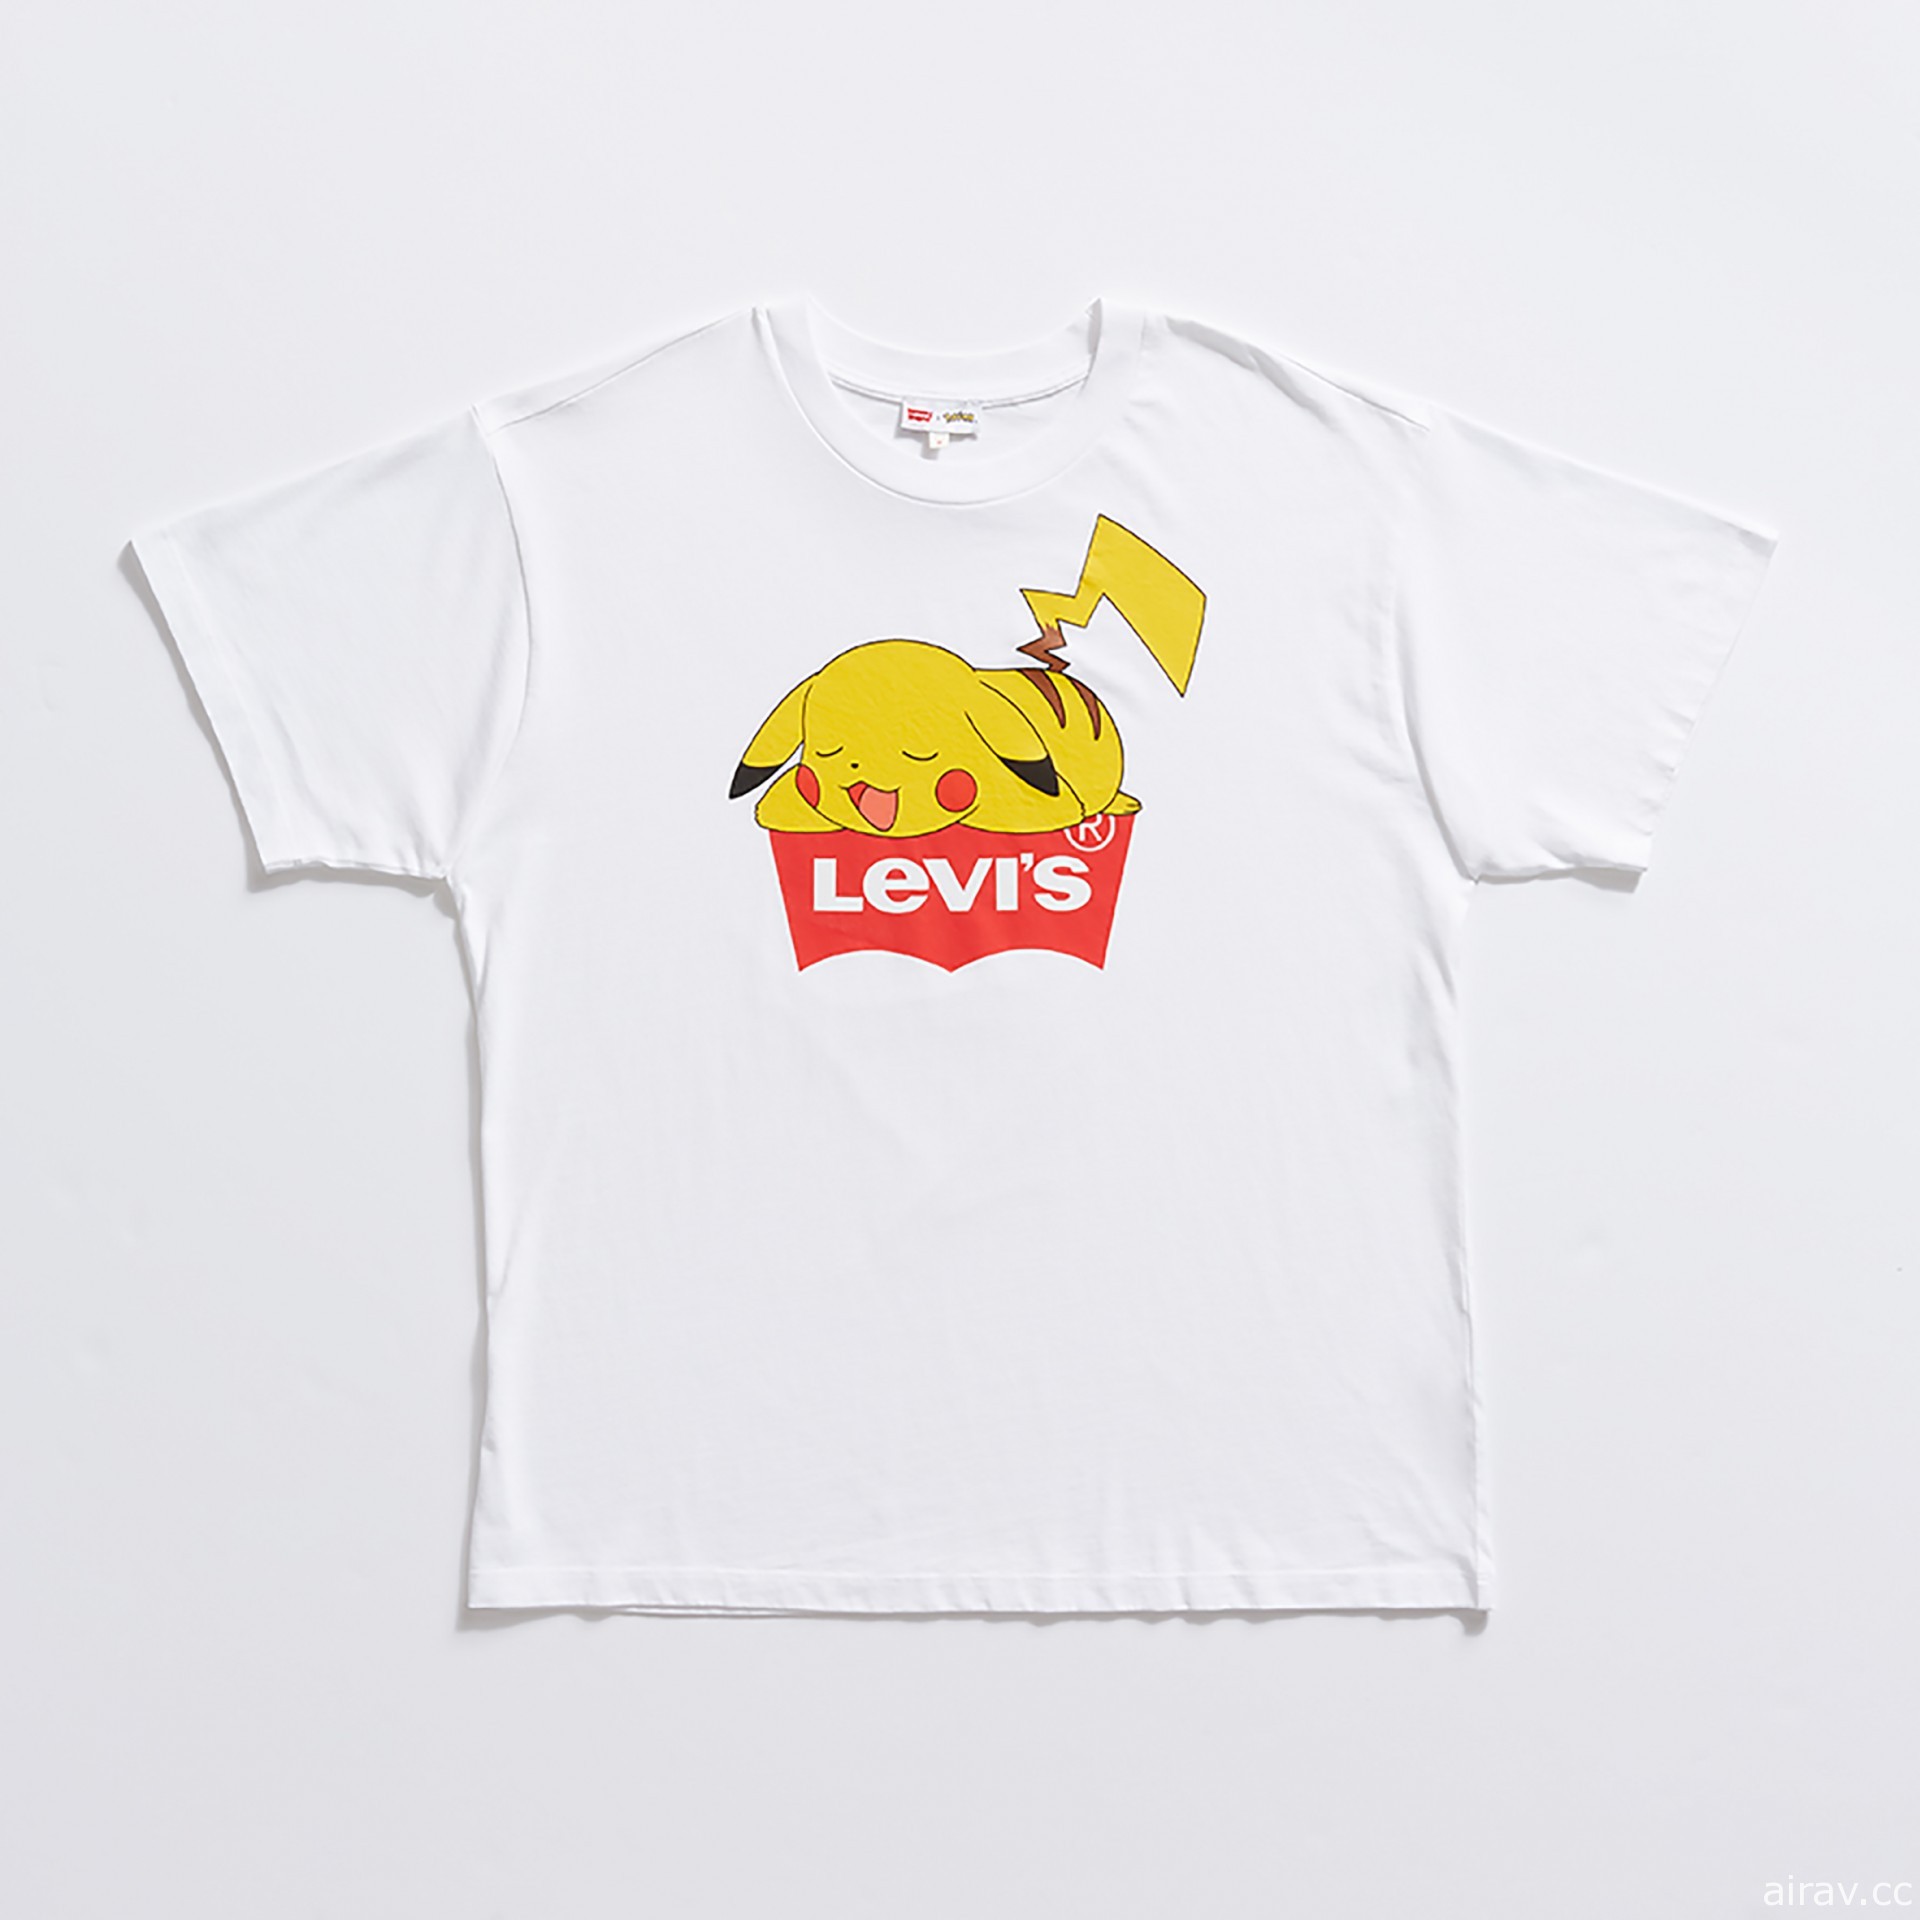 慶祝系列 25 周年 LEVI』S 與《寶可夢 POKÉMON》展開聯名推出系列商品